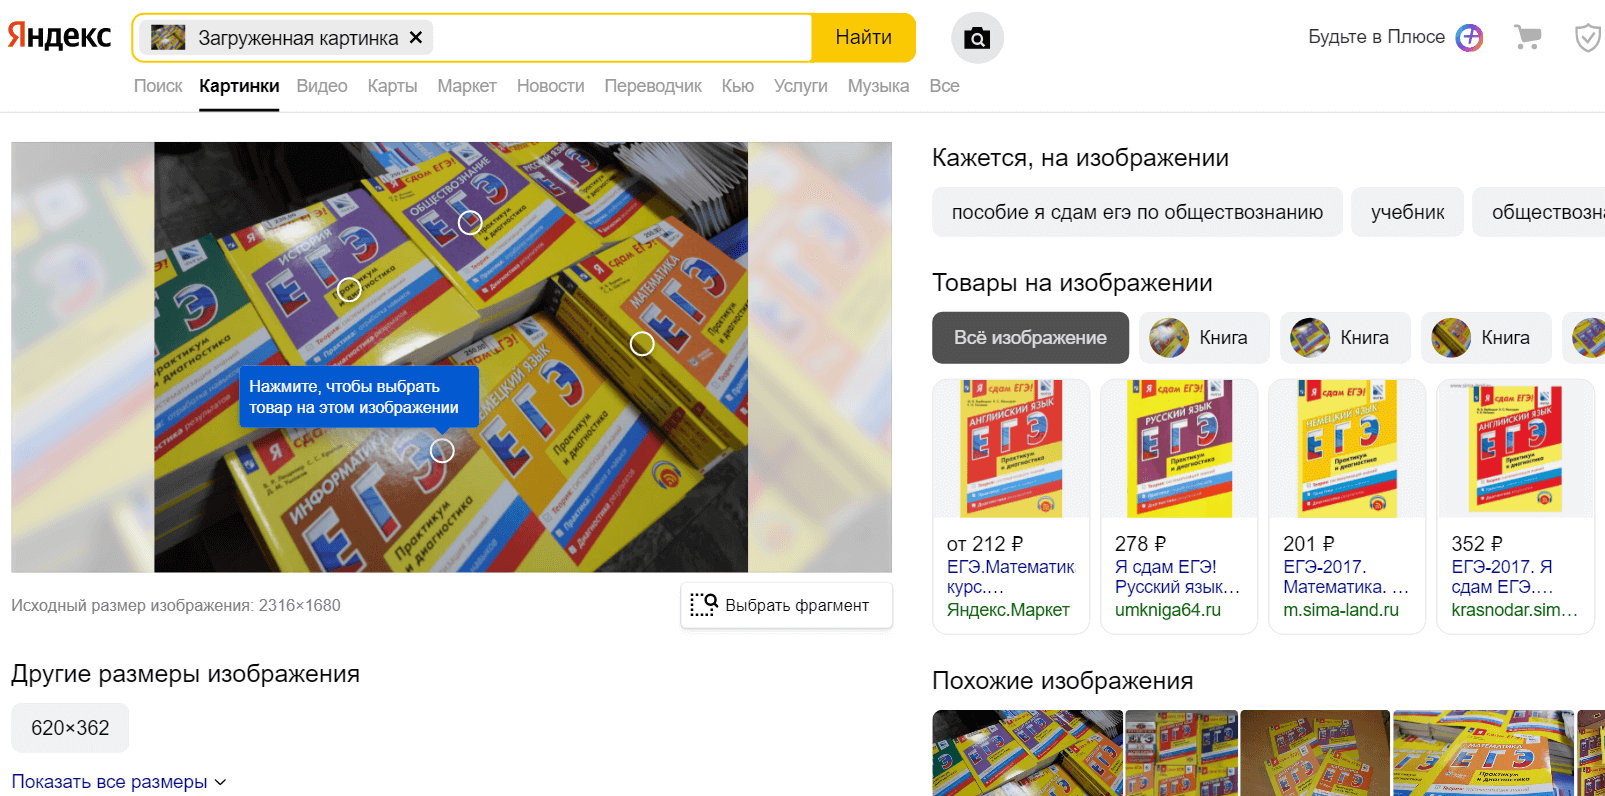 Поиск товара по фото Яндекс